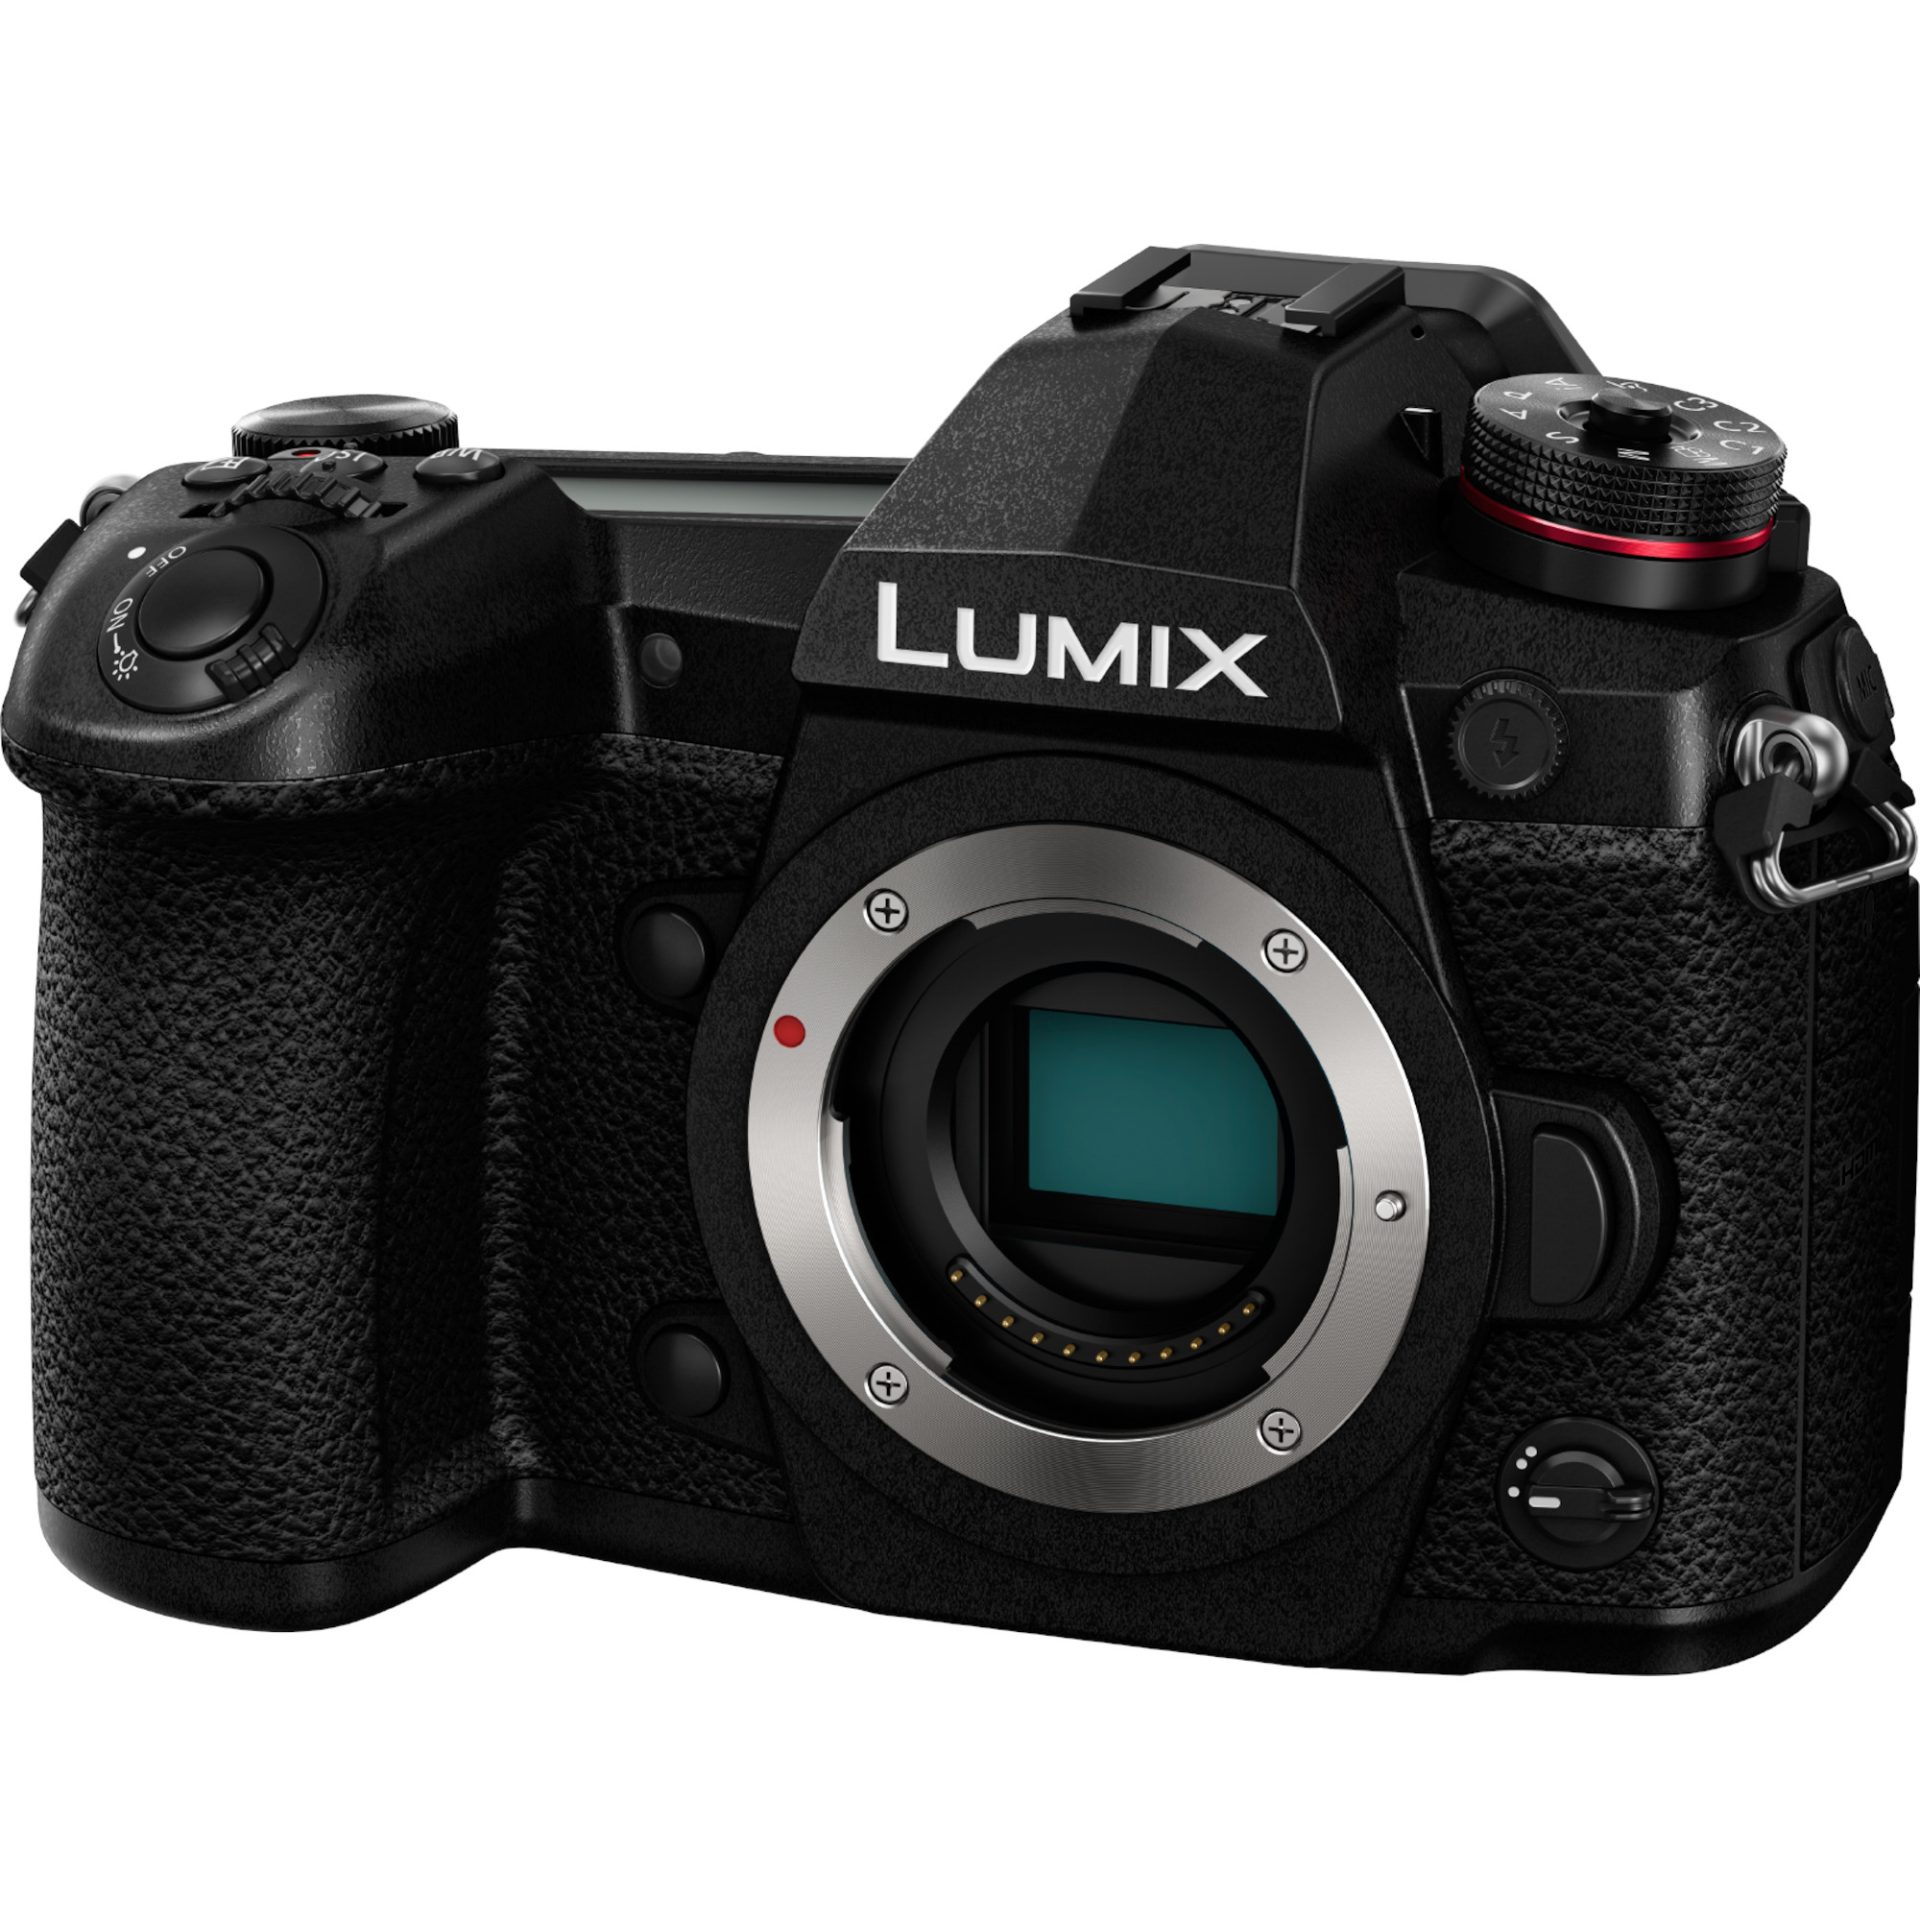 Panasonic DC-G9 Lumix bezzrcadlový digitální fotoaparát (20.3MP Live MOS digitální senzor, 4K 60p/50p video, 6K PHOTO, OLED hledáček 0.83x), černá